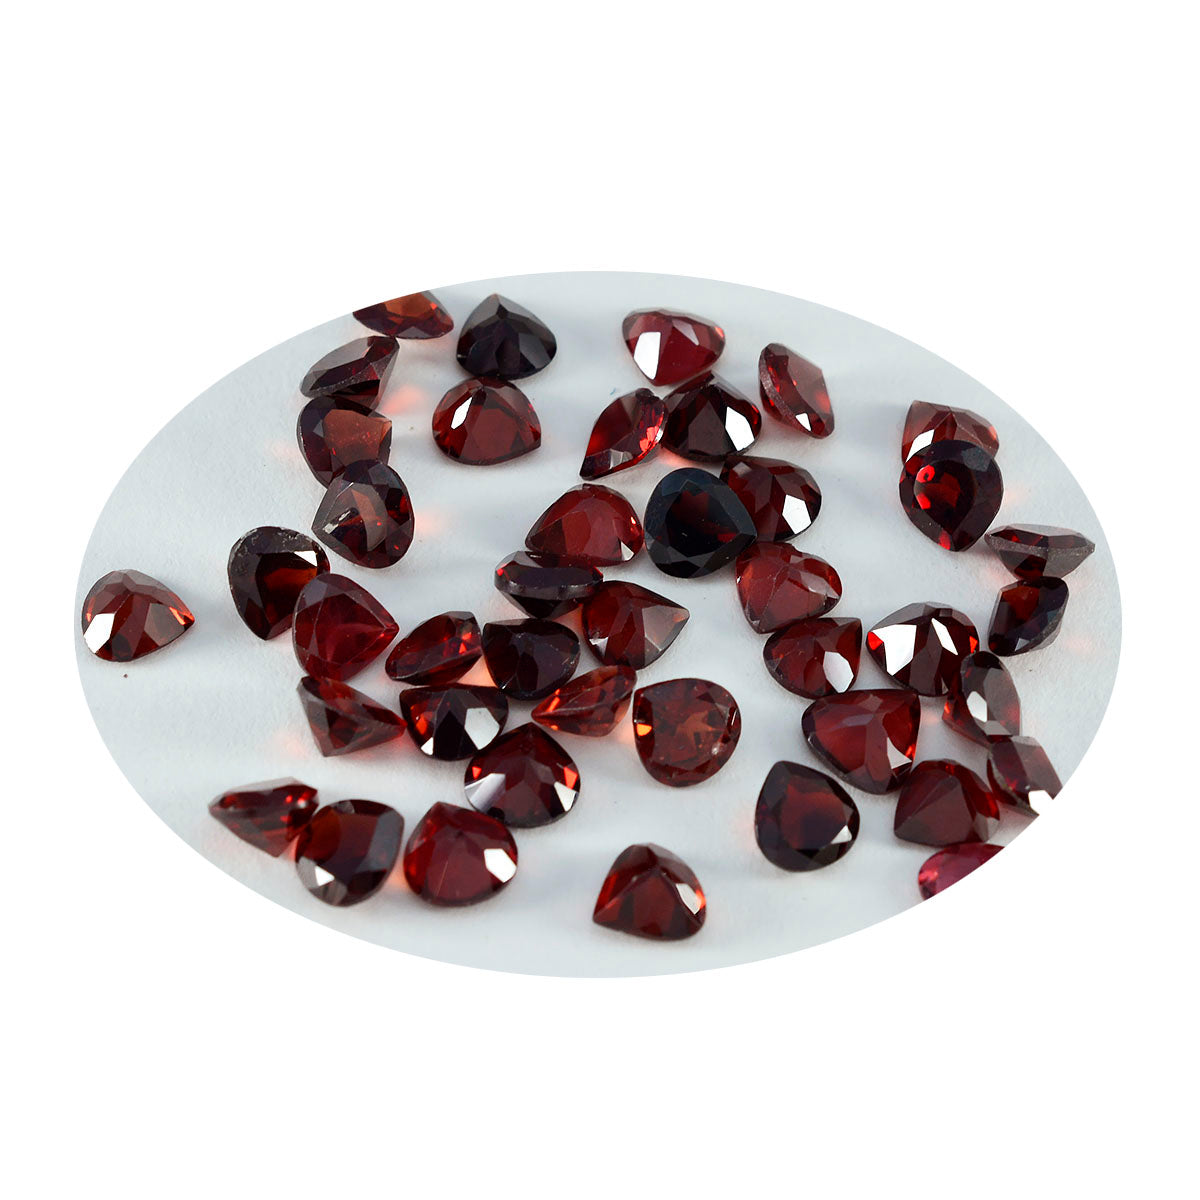 Riyogems 1 pieza de granate rojo natural facetado de 7x7 mm en forma de corazón, piedra preciosa suelta de calidad asombrosa